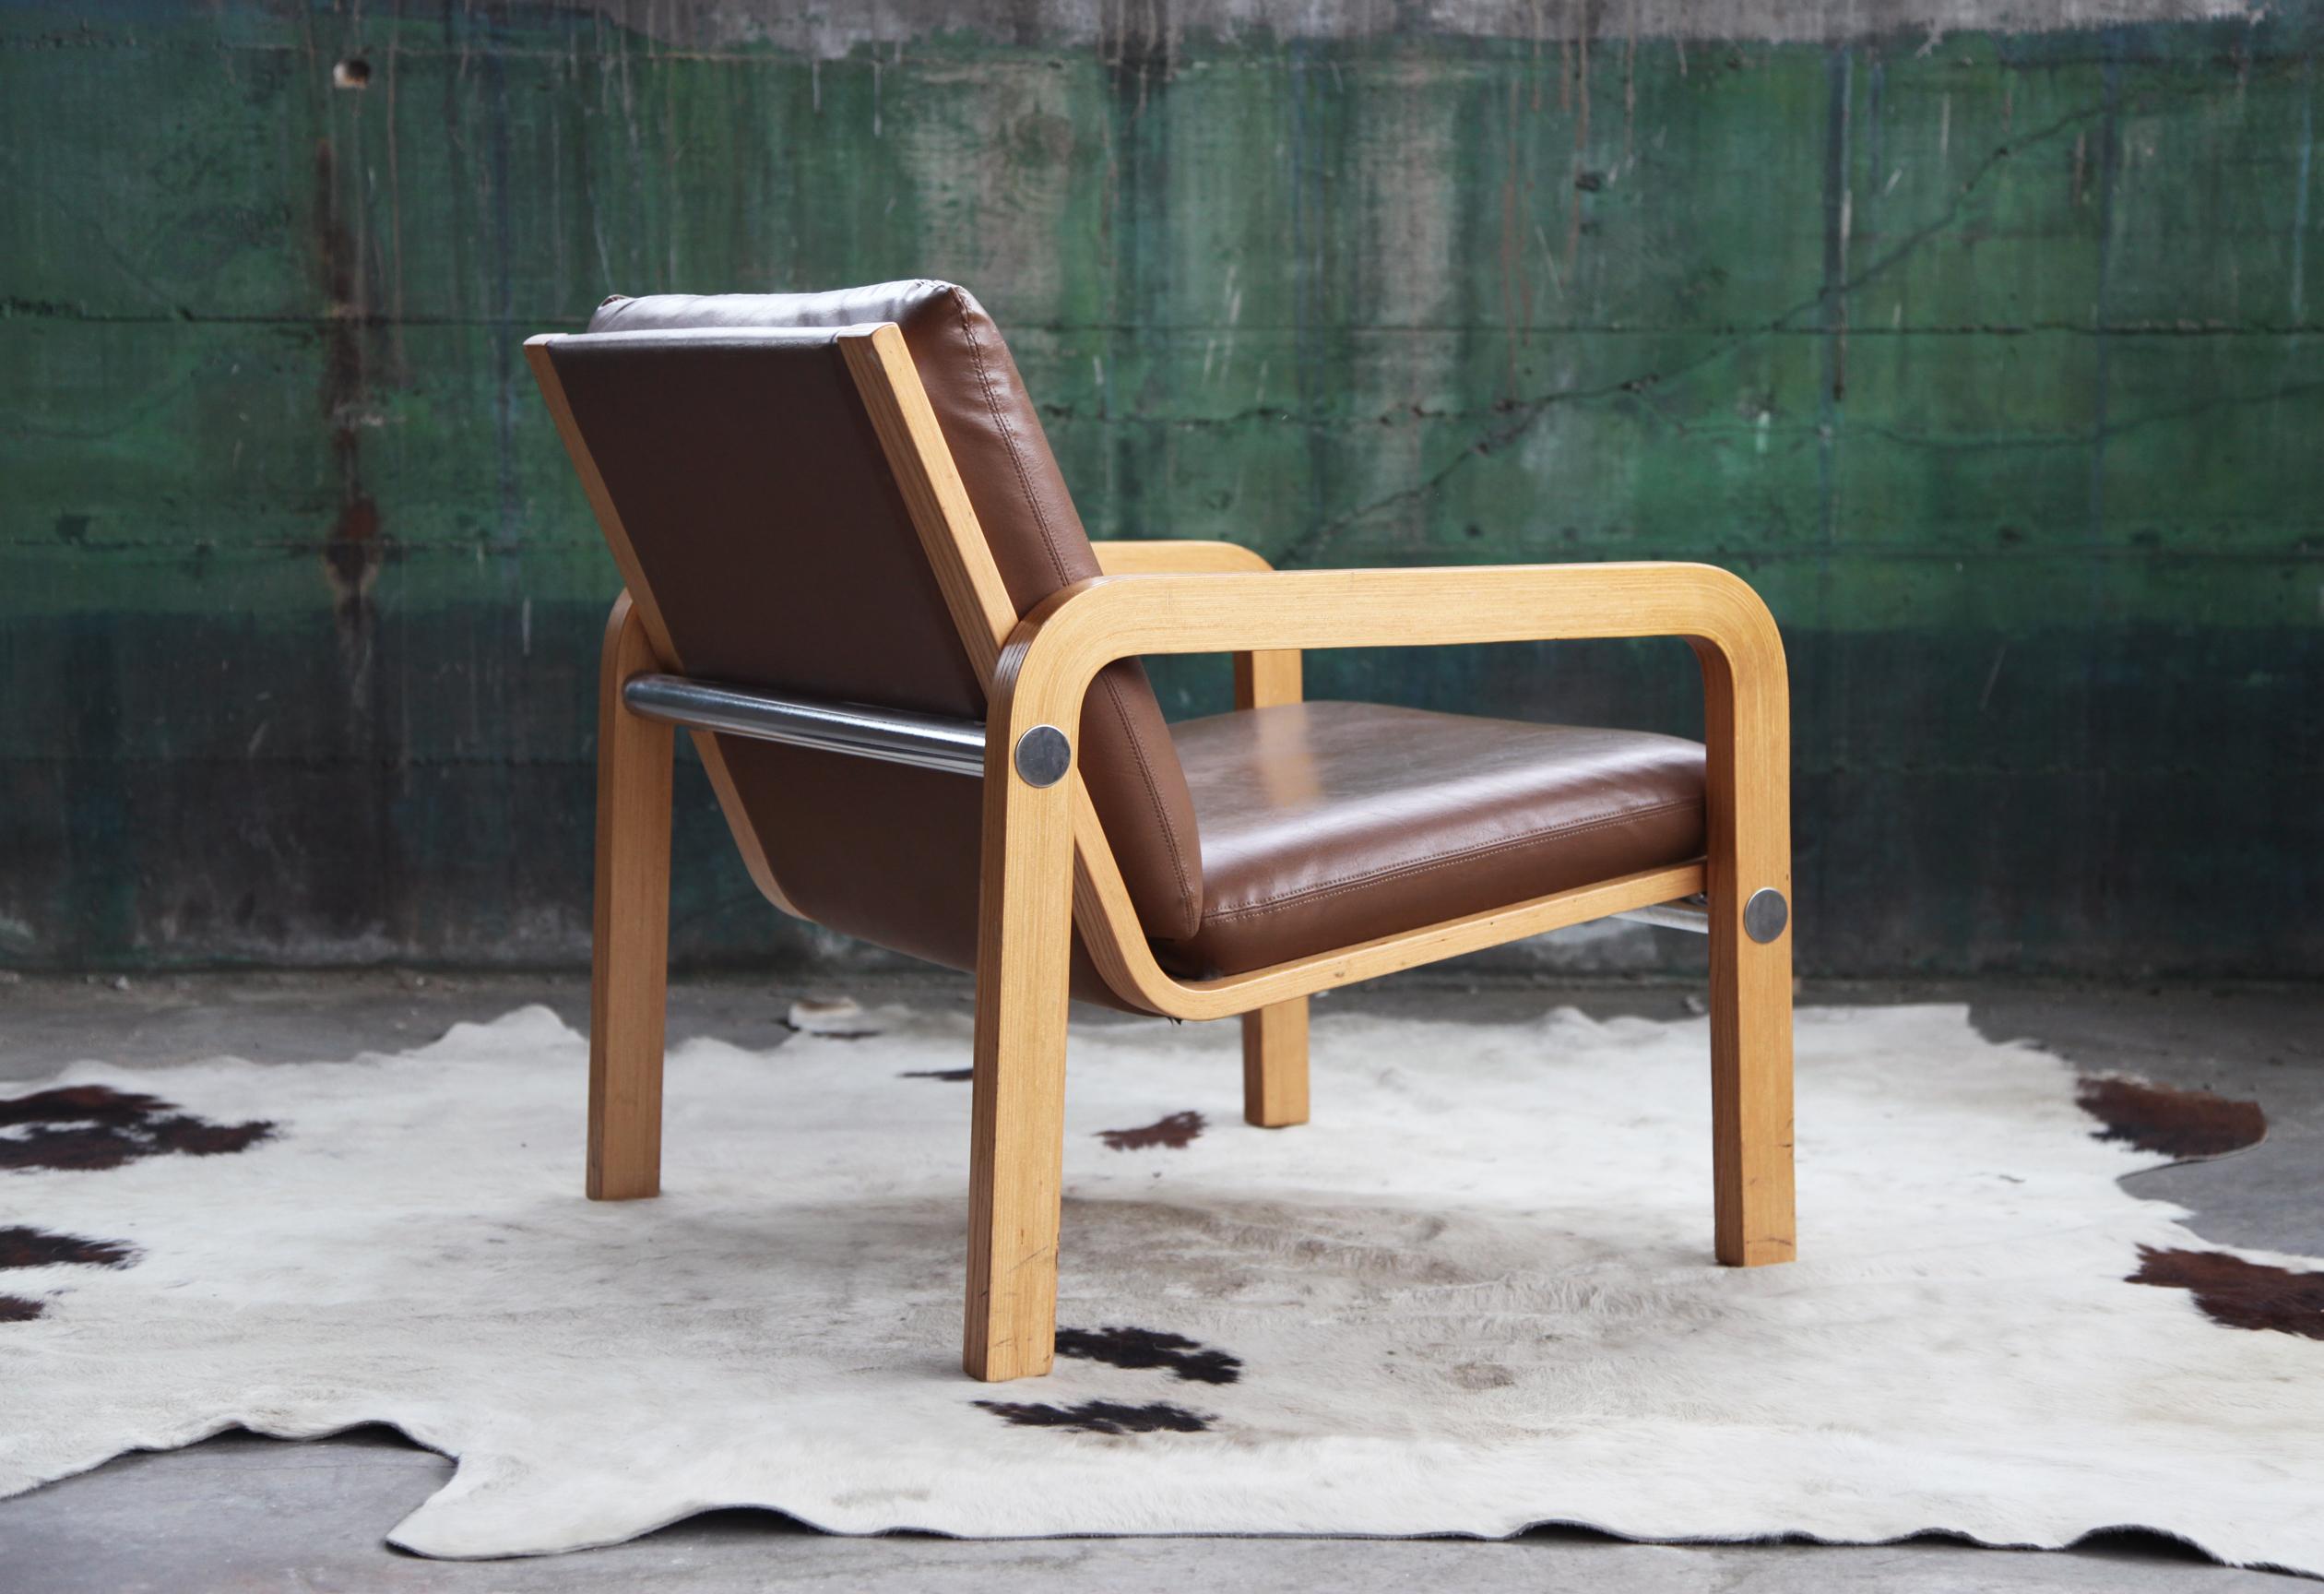 Zu verkaufen ist hier eine seltene atemberaubende Lounge / Seite / Akzent Bugholz Stuhl von THONET gemacht.

Der Stuhl ist ein Stuhl aus der Mitte des Jahrhunderts, mit raffiniertem Charakter, hochwertiger Handwerkskunst und einzigartigen